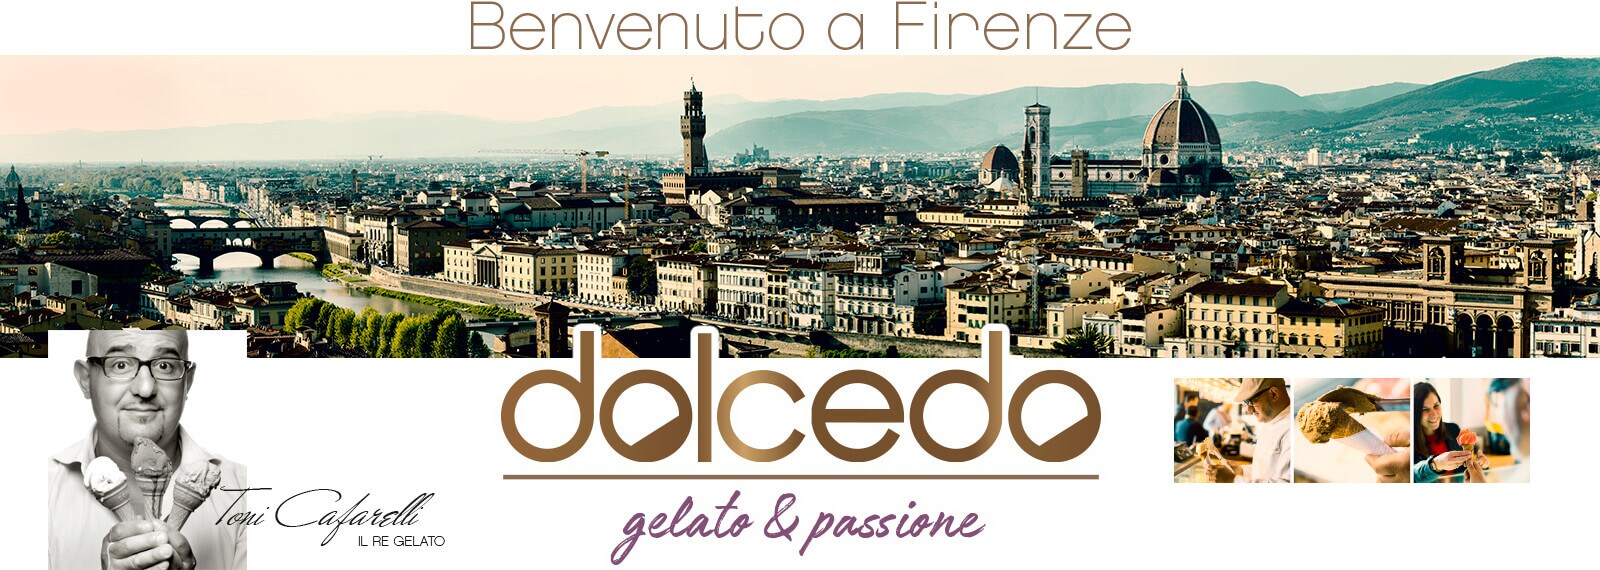 dolcedo_Toni Cafarelli & Florenz Skyline